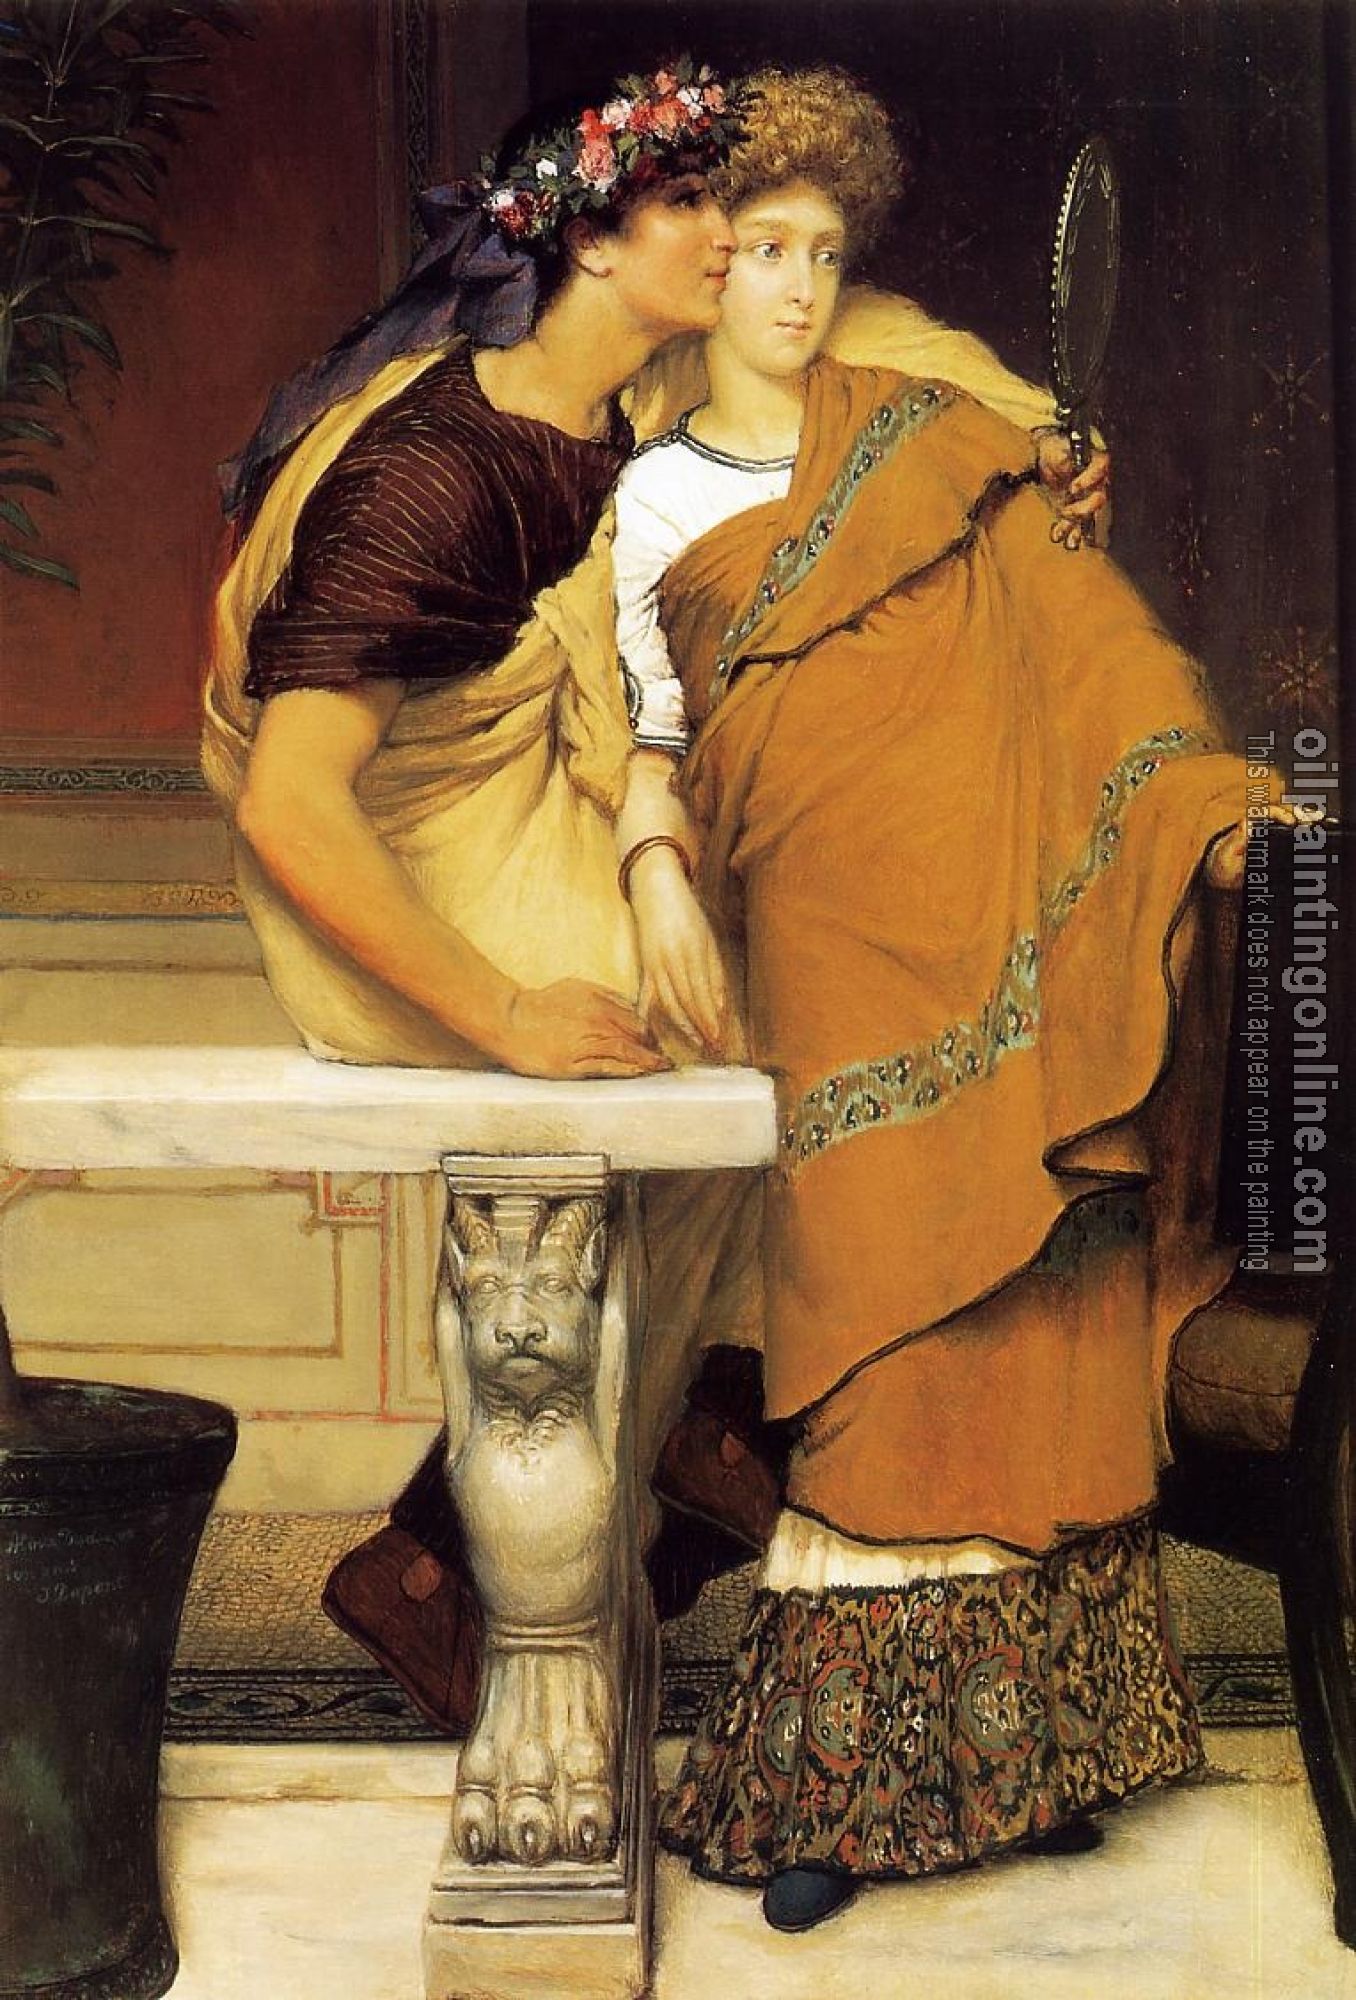 Alma-Tadema, Sir Lawrence - The Honeymoon